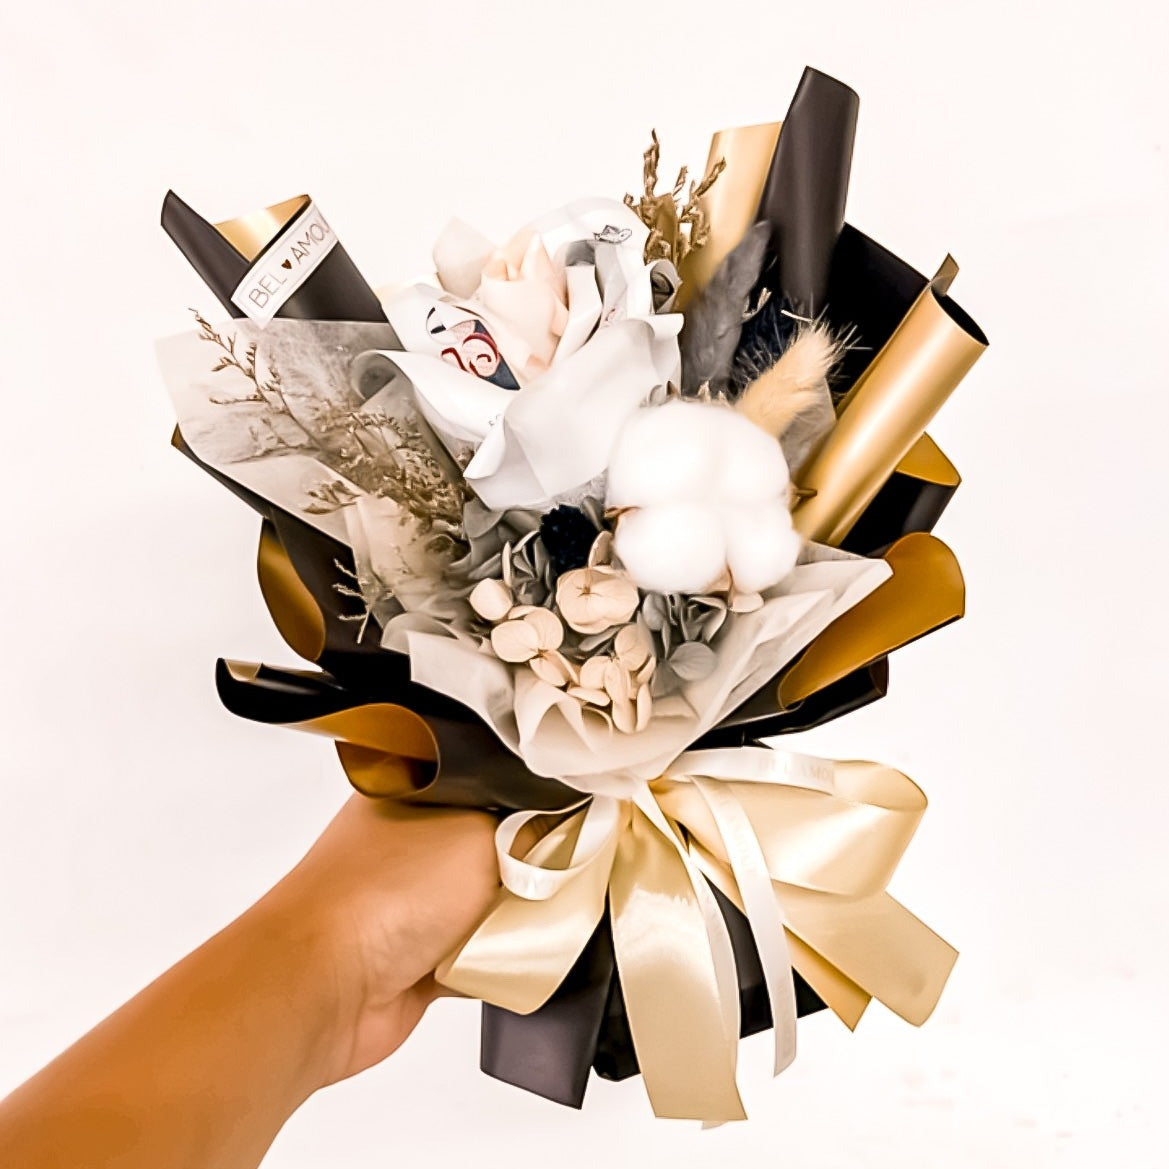 Black & Gold Cash Bouquet / Money Flower